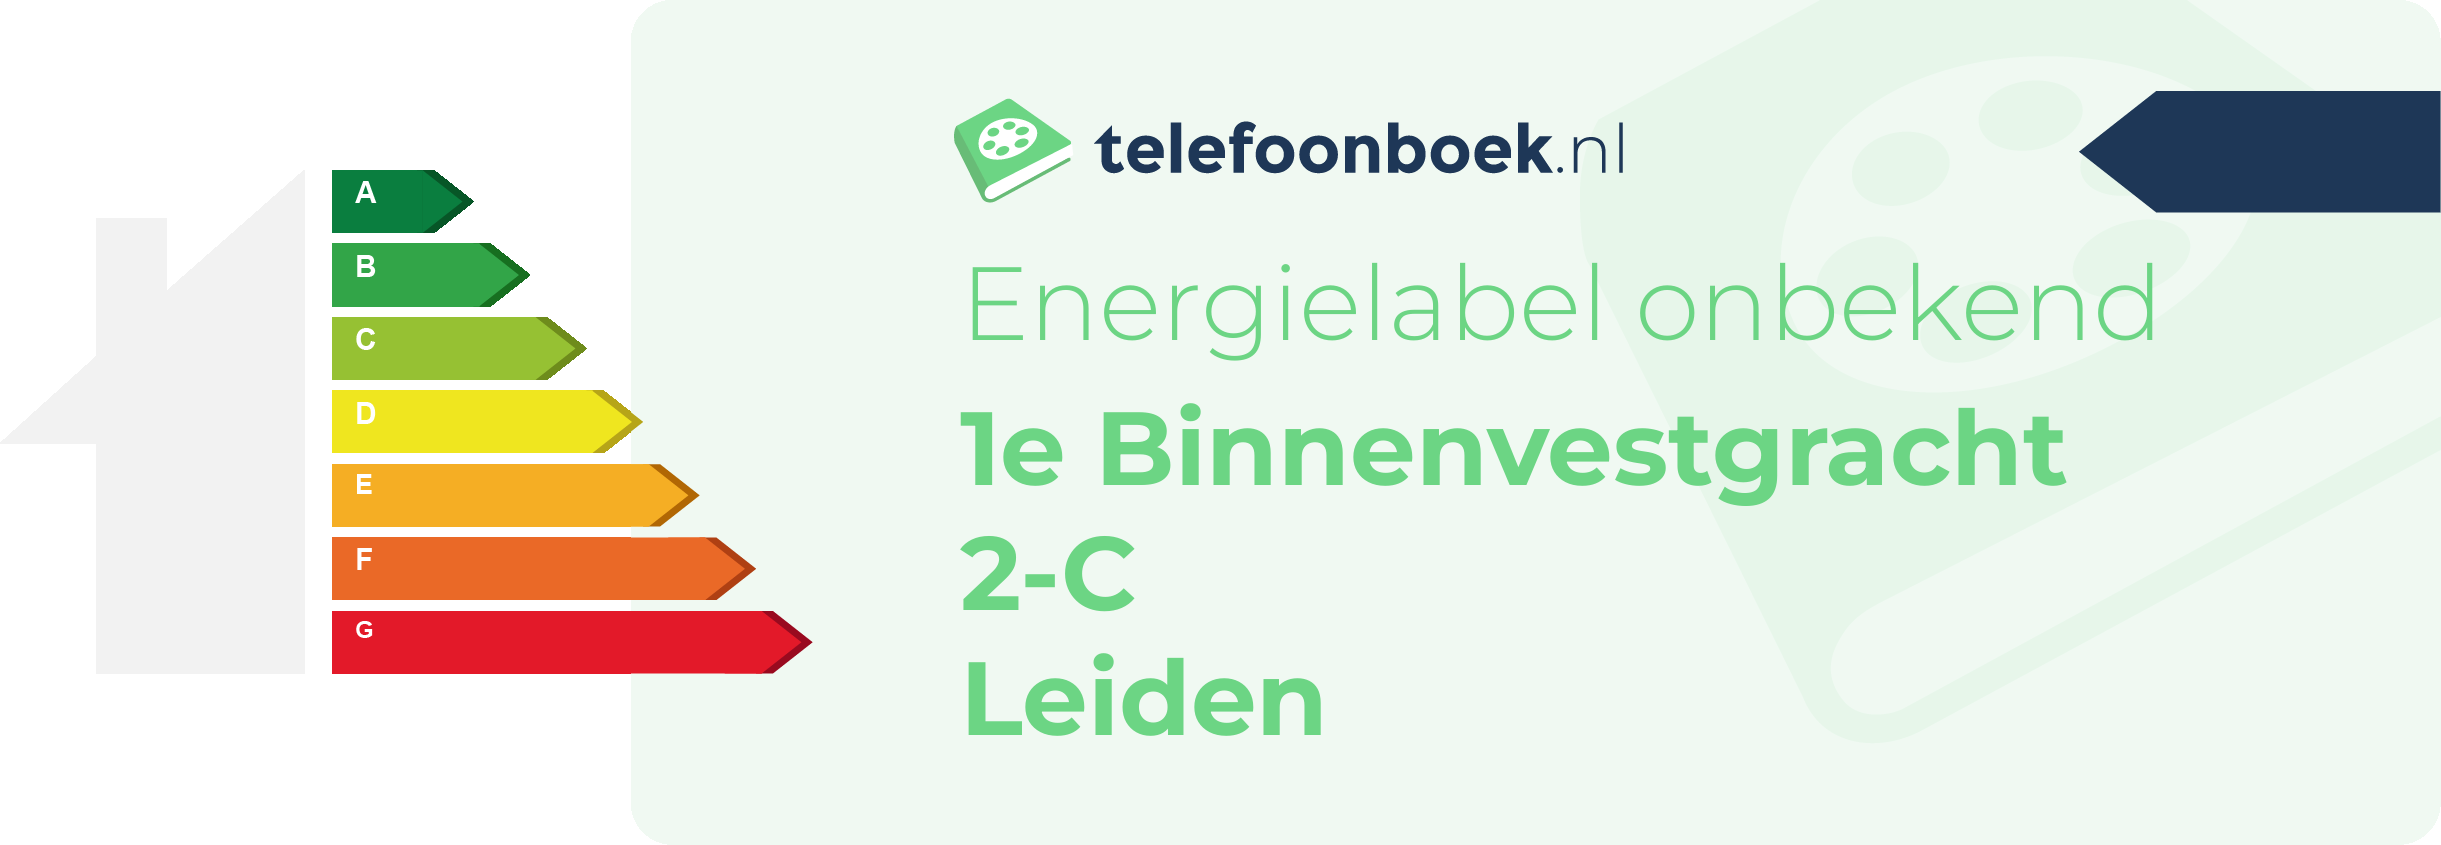 Energielabel 1e Binnenvestgracht 2-C Leiden